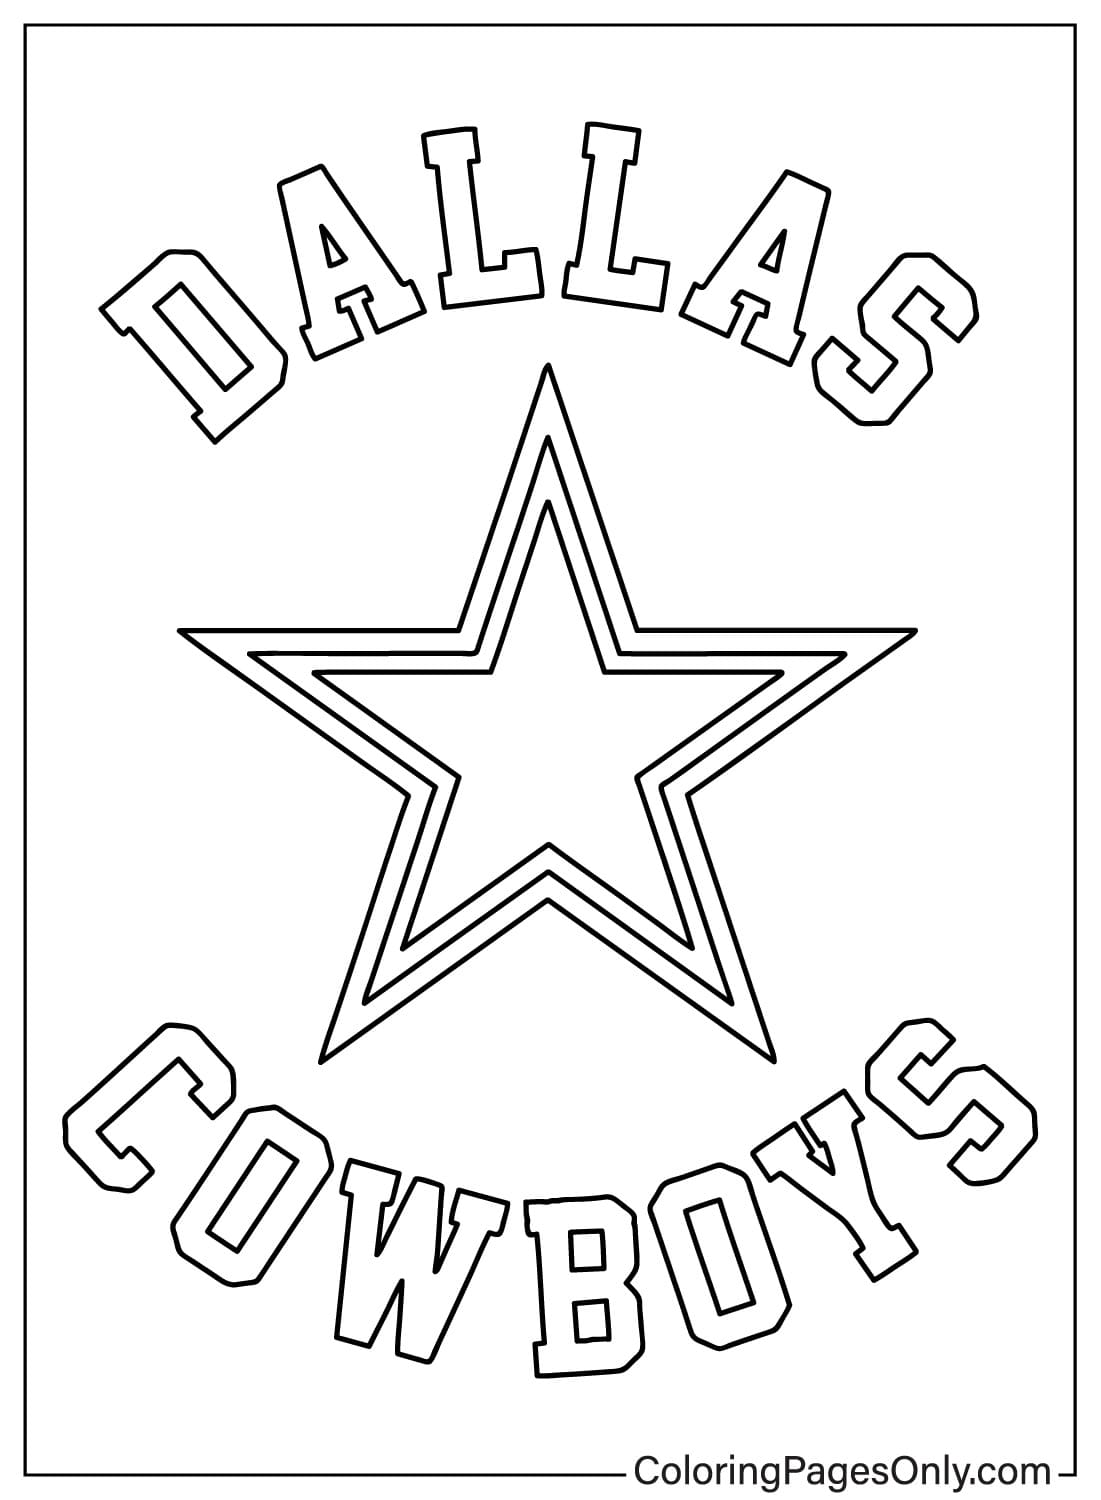 Dallas Cowboys kleurplaat van Dallas Cowboys